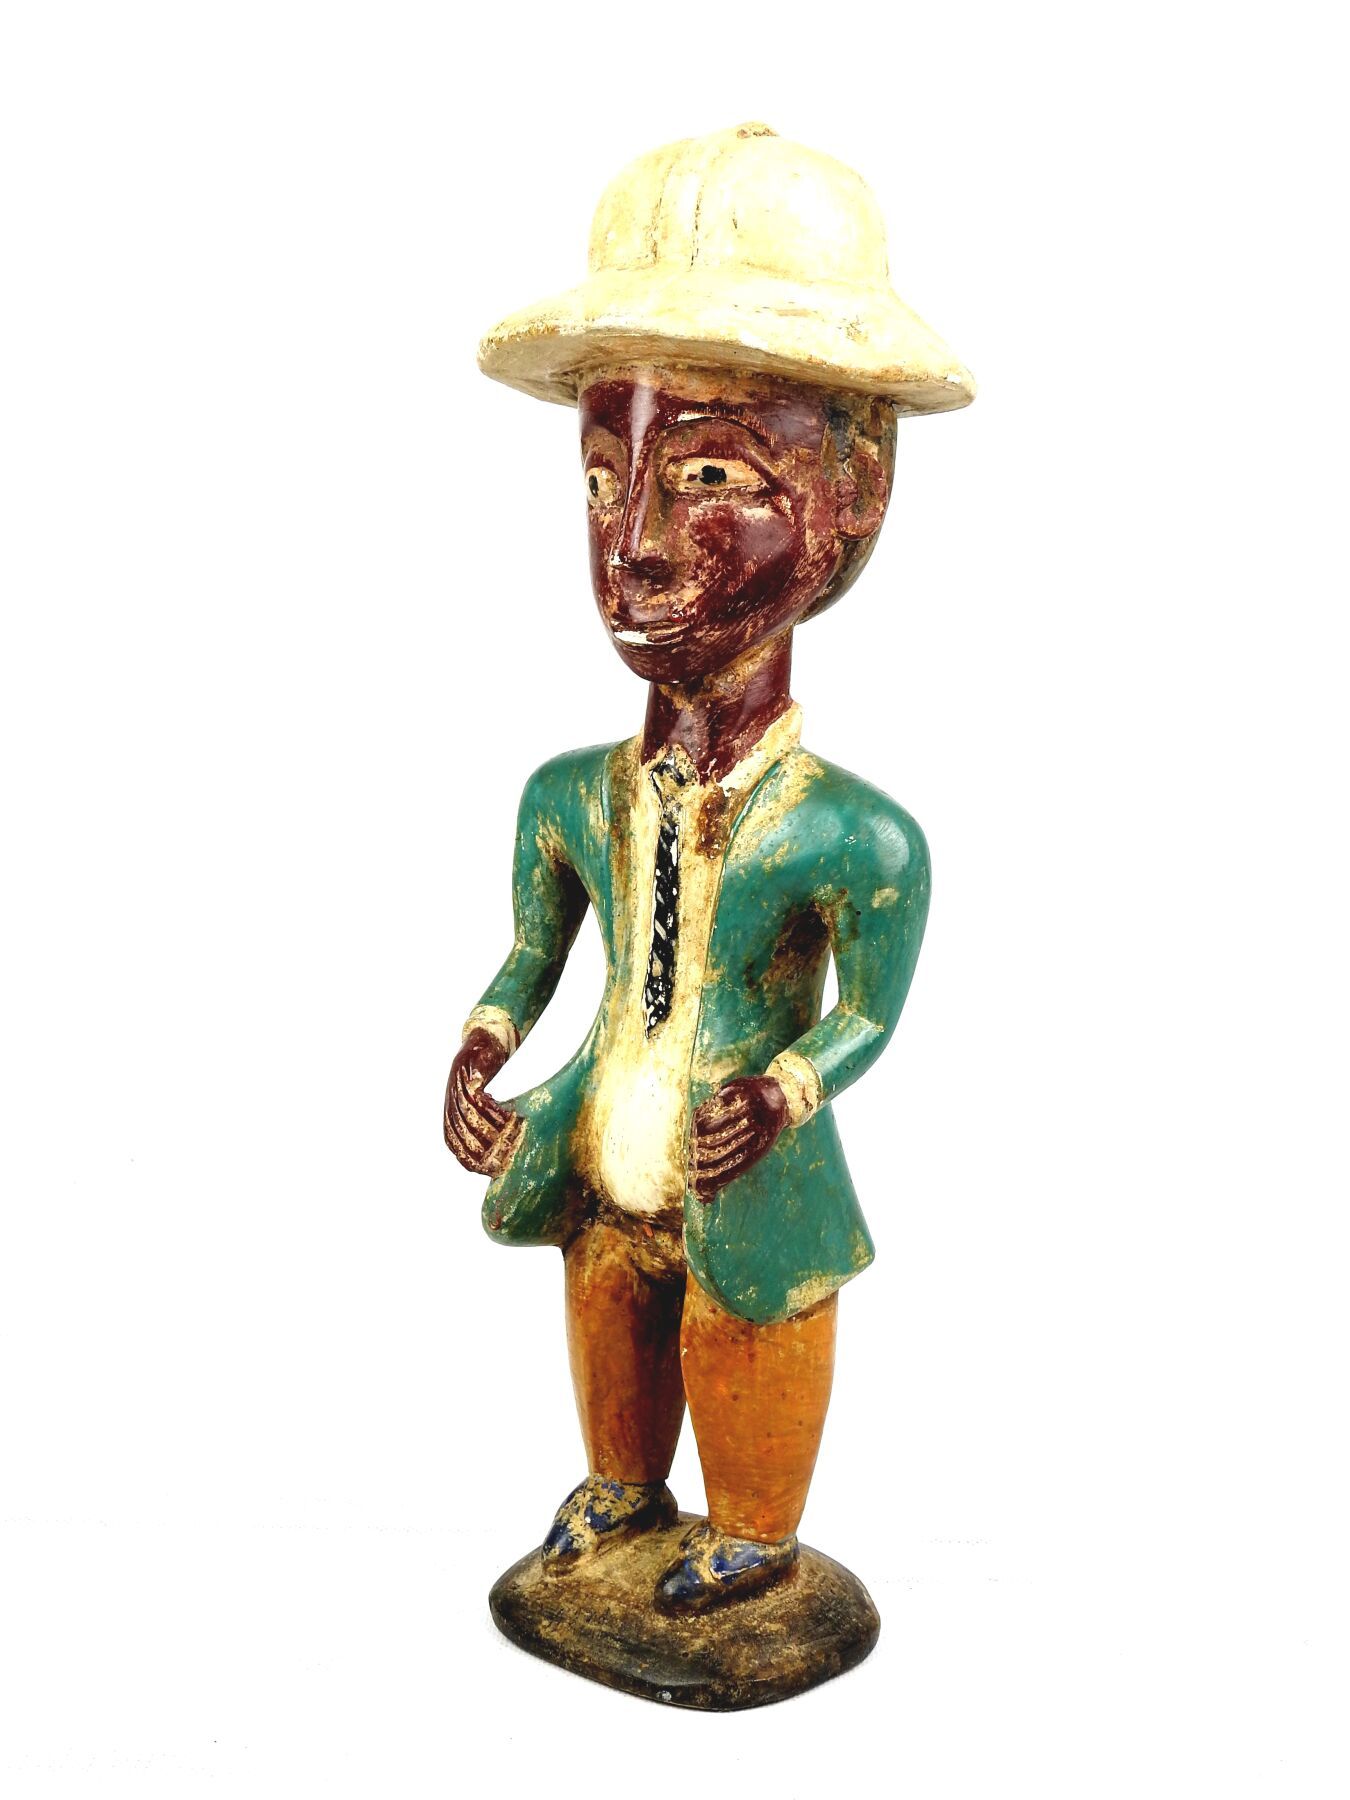 Null 刚果。
上漆的硬木。
戴着殖民时期头盔的丹迪雕像。
高度：40厘米。
略有磨损。